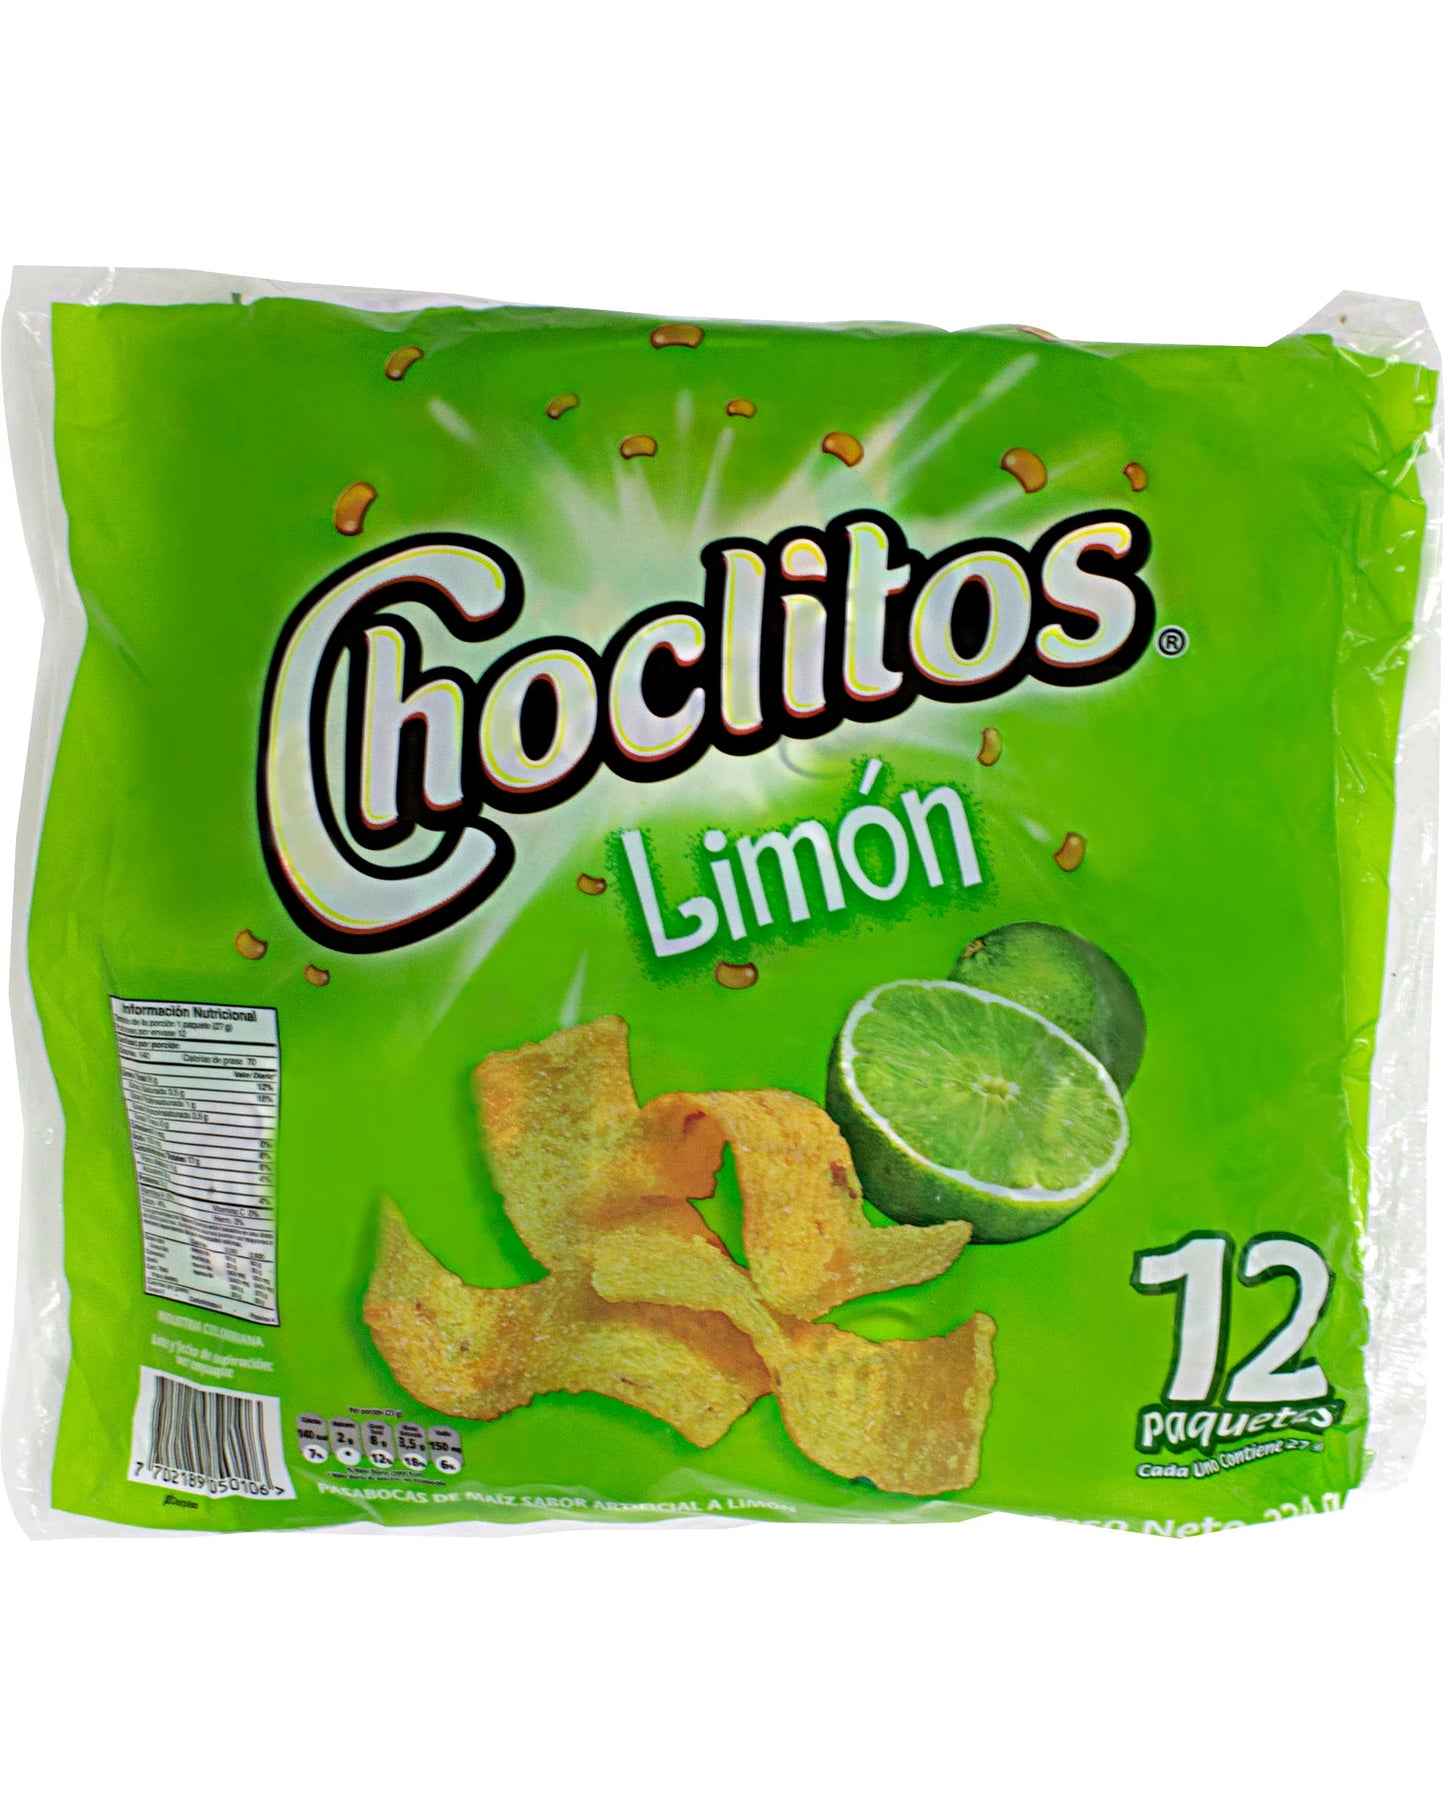 CHOCLITOS LIMÓN (12 pack)